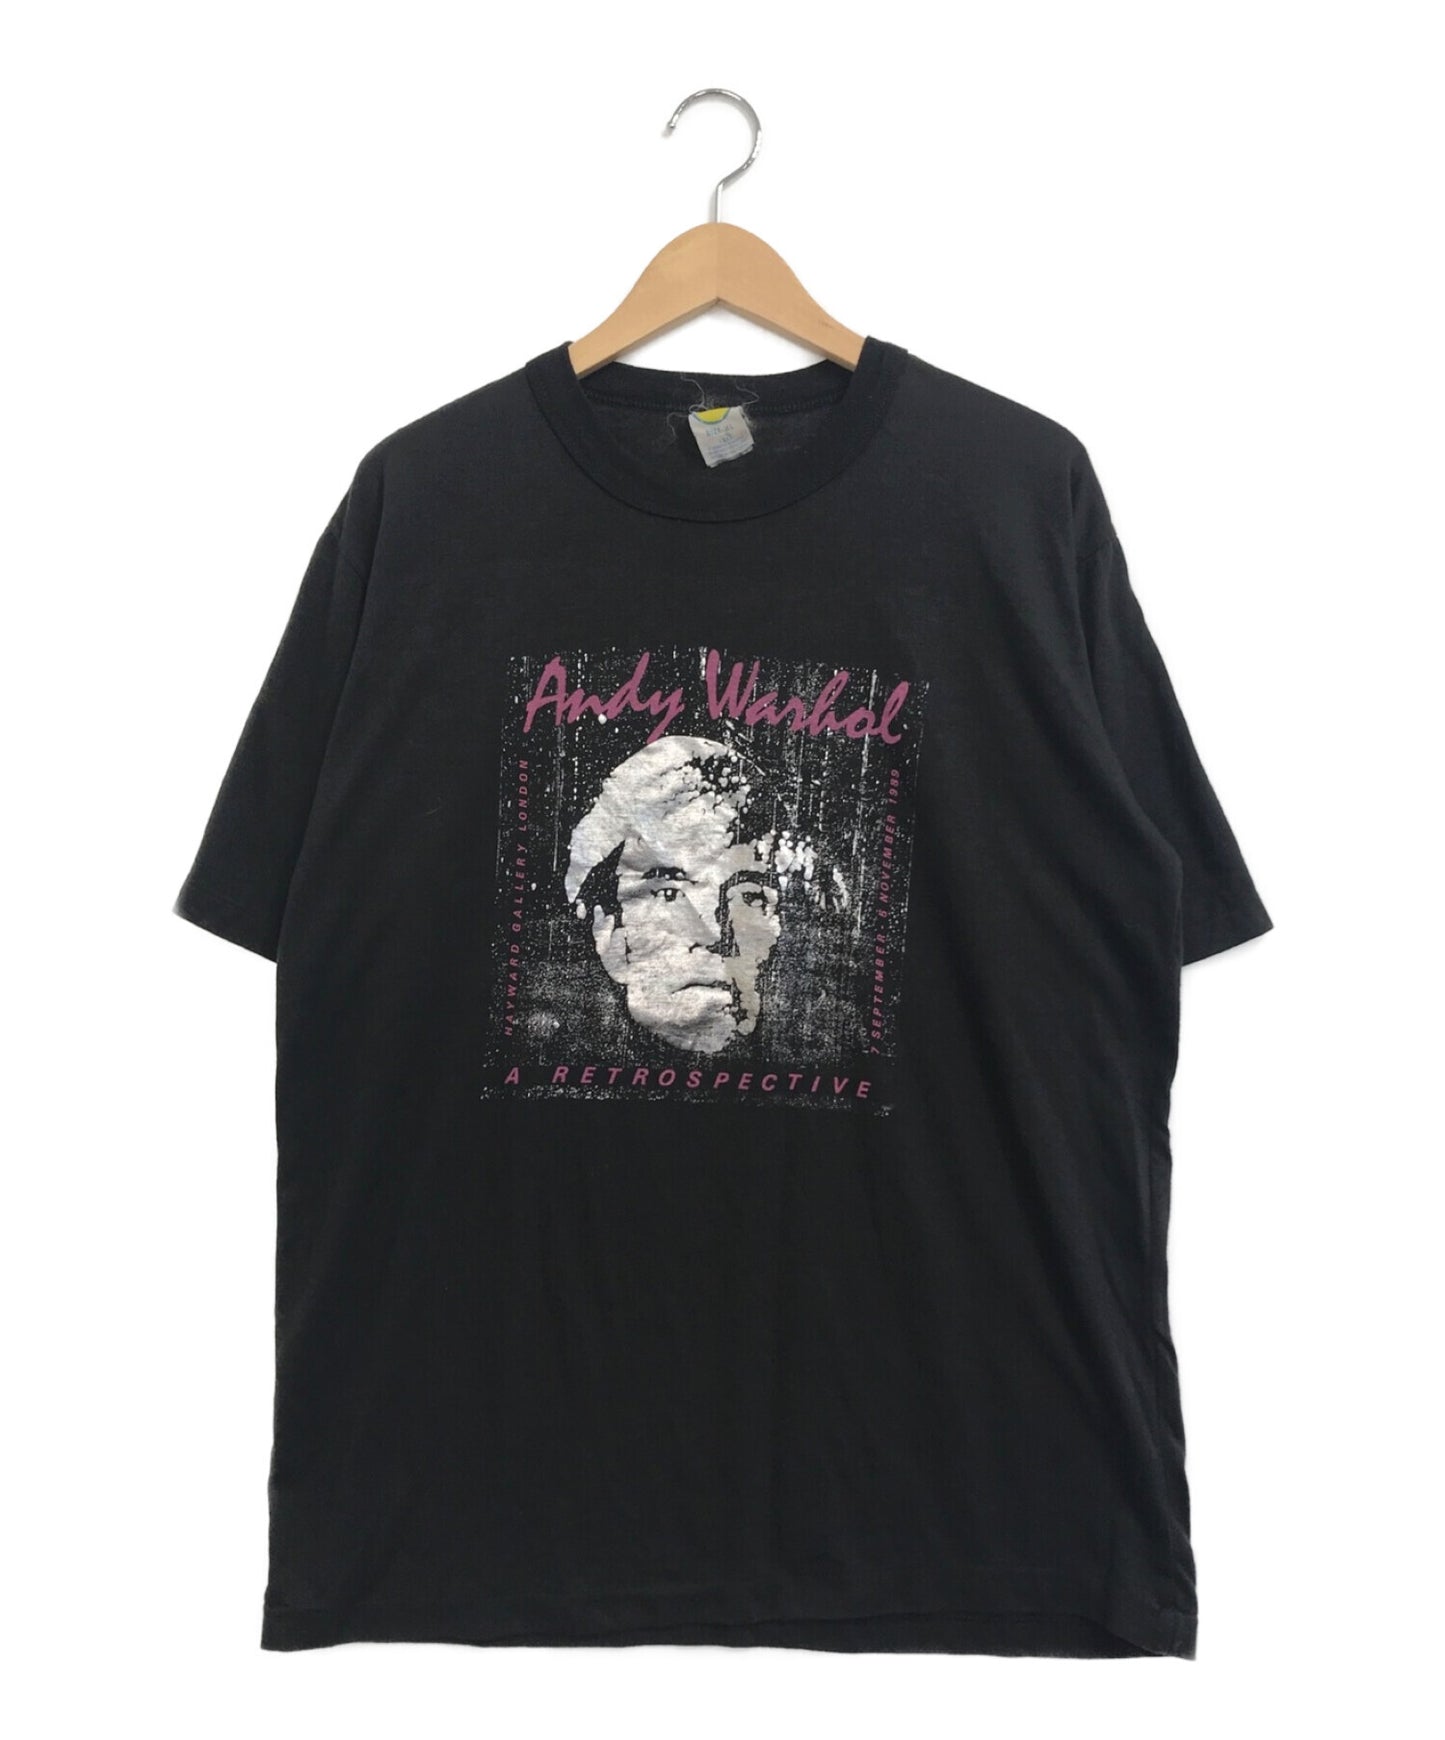 เสื้อยืดพิมพ์ของ Andy Warhol 80